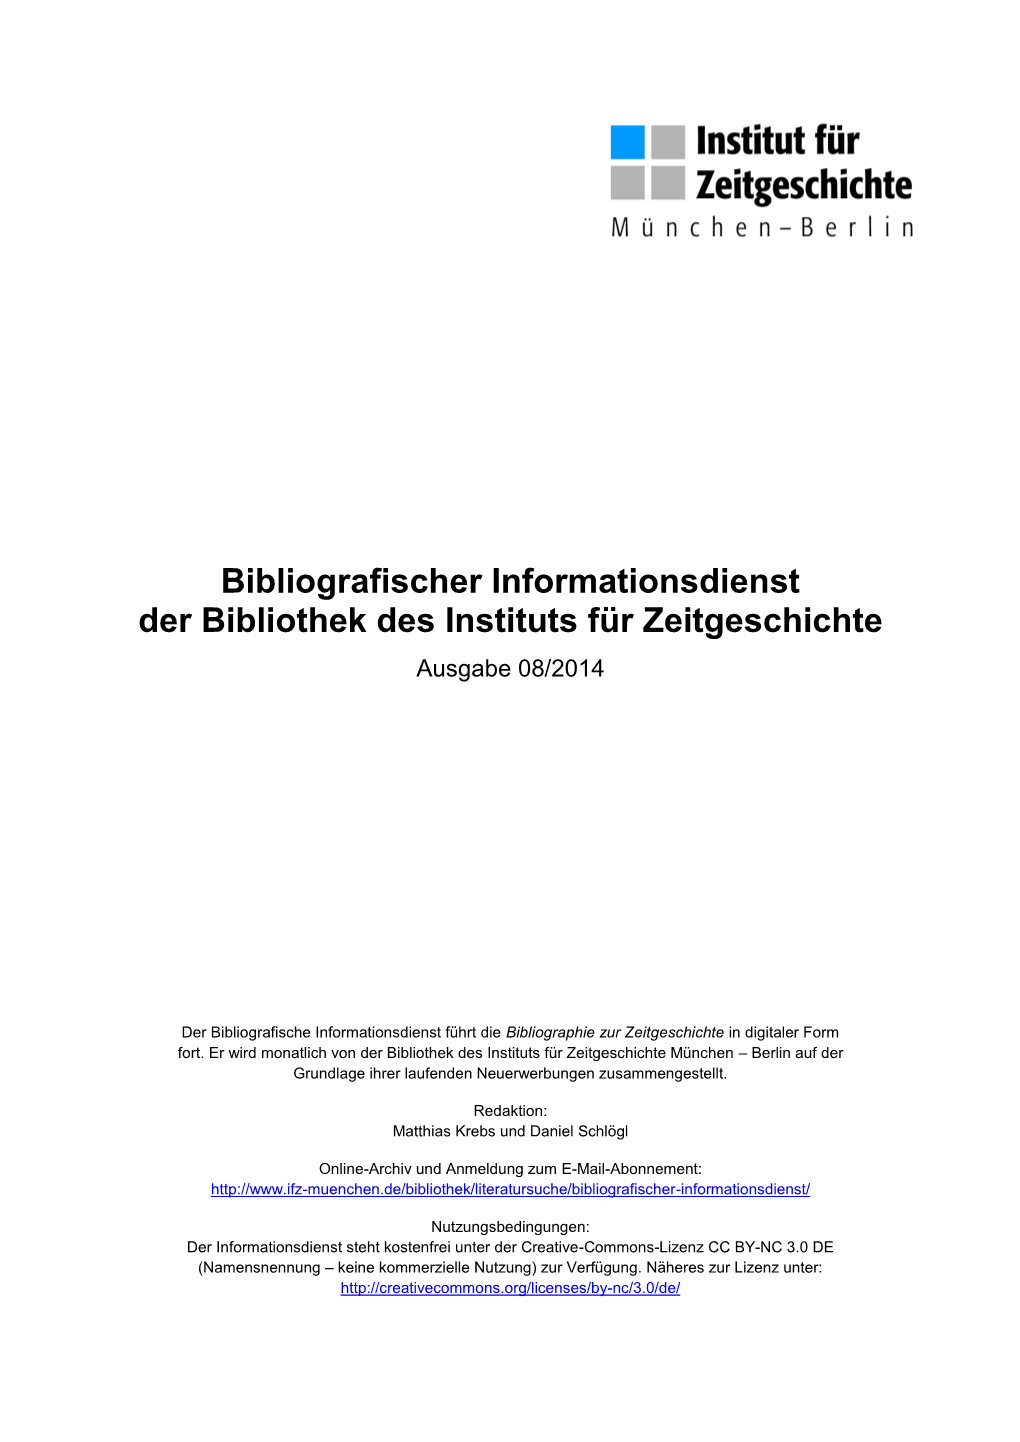 Bibliografischer Informationsdienst 08/2014